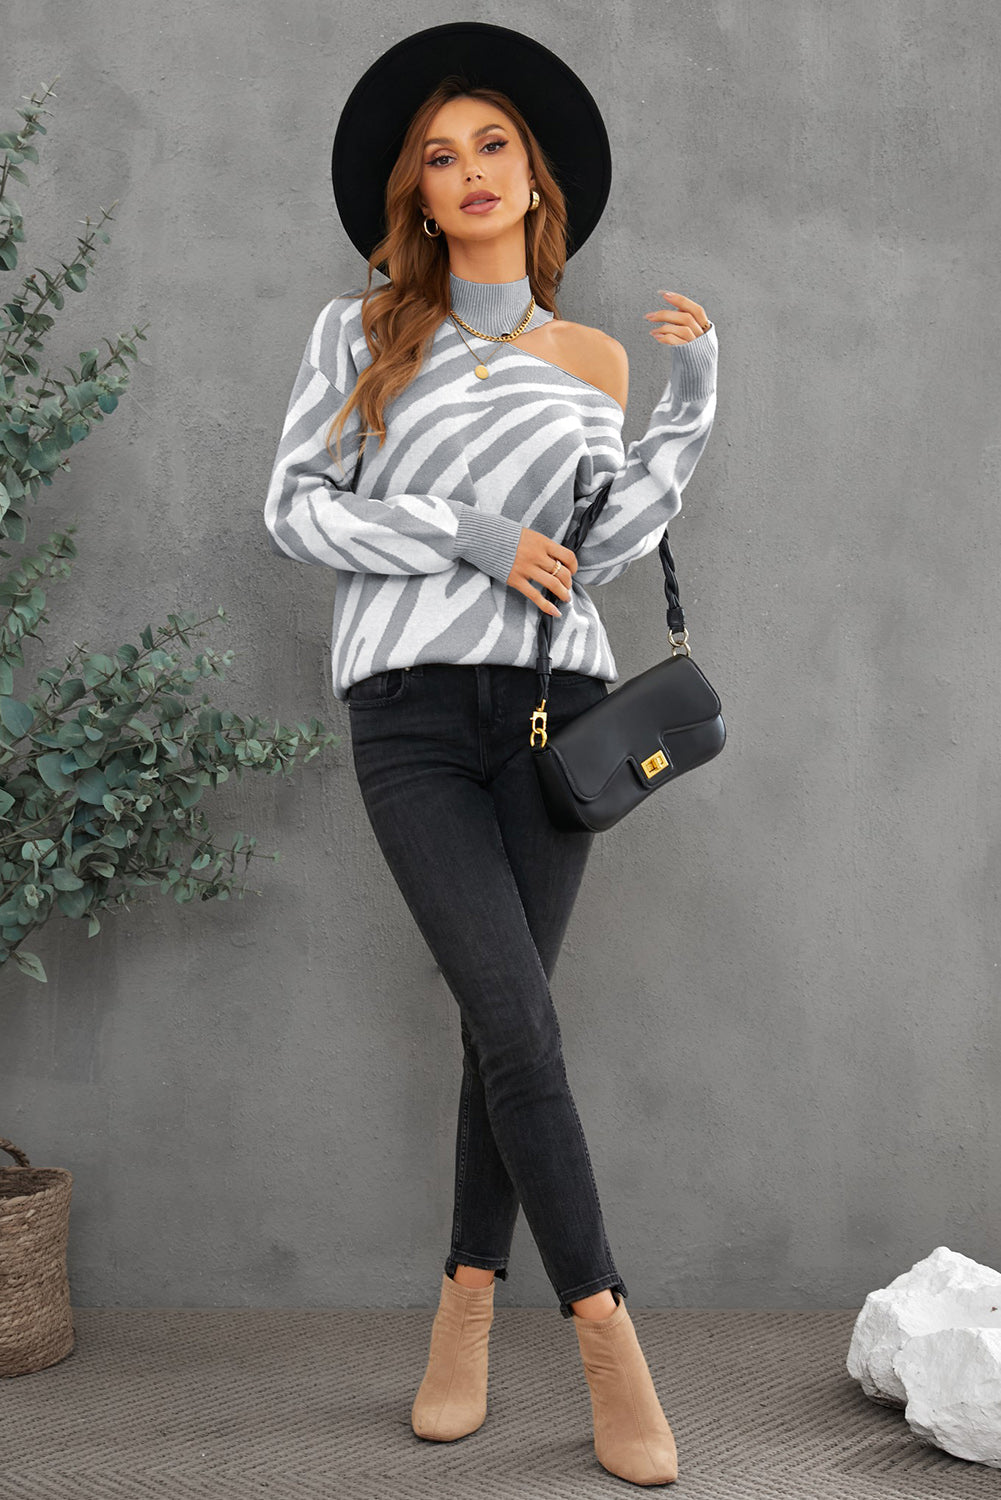 Buy Zebra Sweaters for Women Online